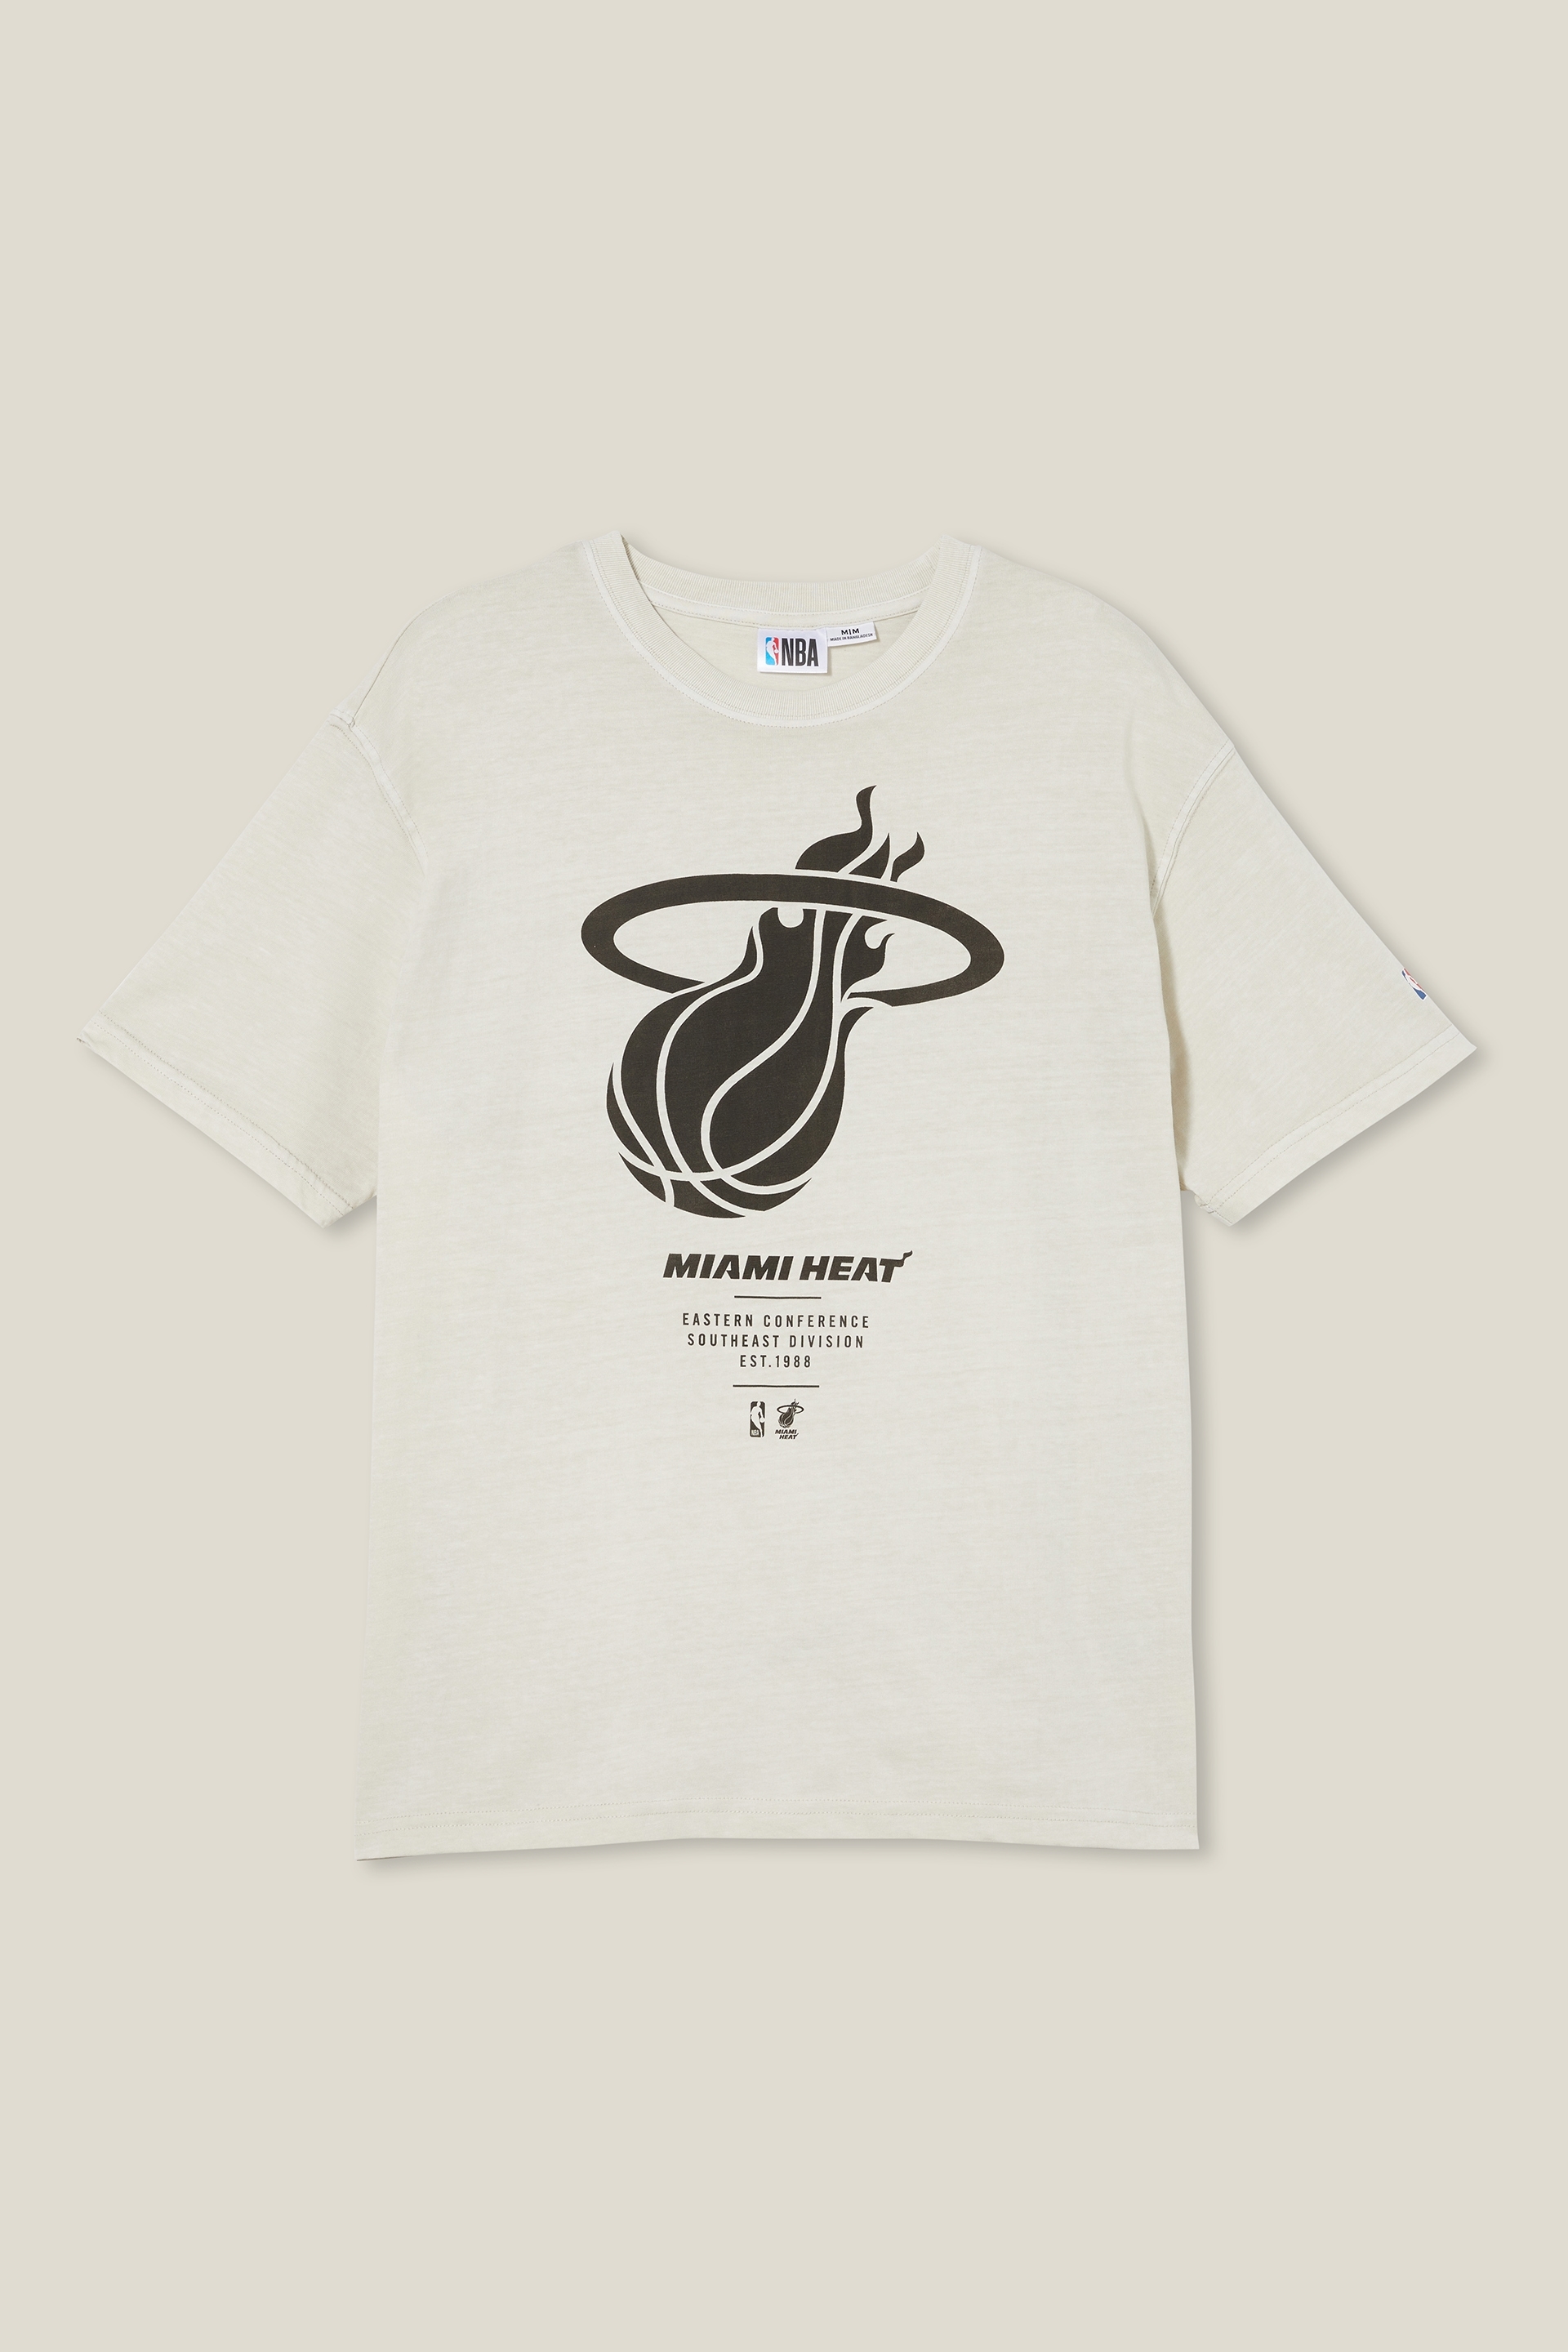 MIAMI HEAT NBA™ T-shirt - Collabs - T-shirts - CLOTHING - Boy